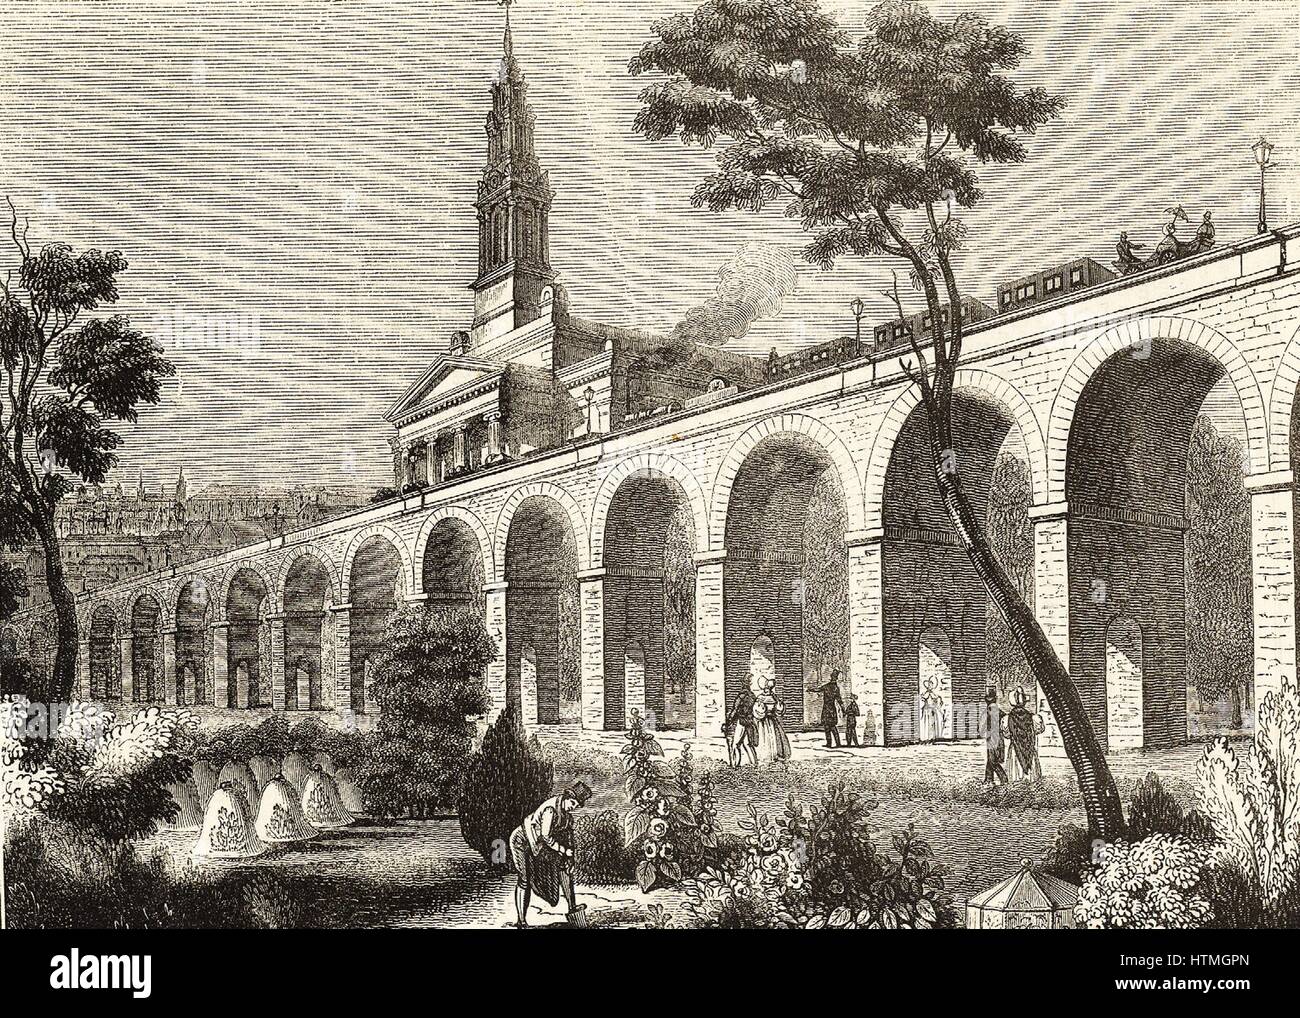 London und Greenwich Railway, Projektor und Ingenieur Lieut Col George Thomas Landmann (1779-1854). Viadukt in der Nähe von Bermondsey New Church quer durch die Landschaft, verdecken den Blick auf die Kirche und völlig im Widerspruch mit der Garten-Szene in der foregr Stockfoto